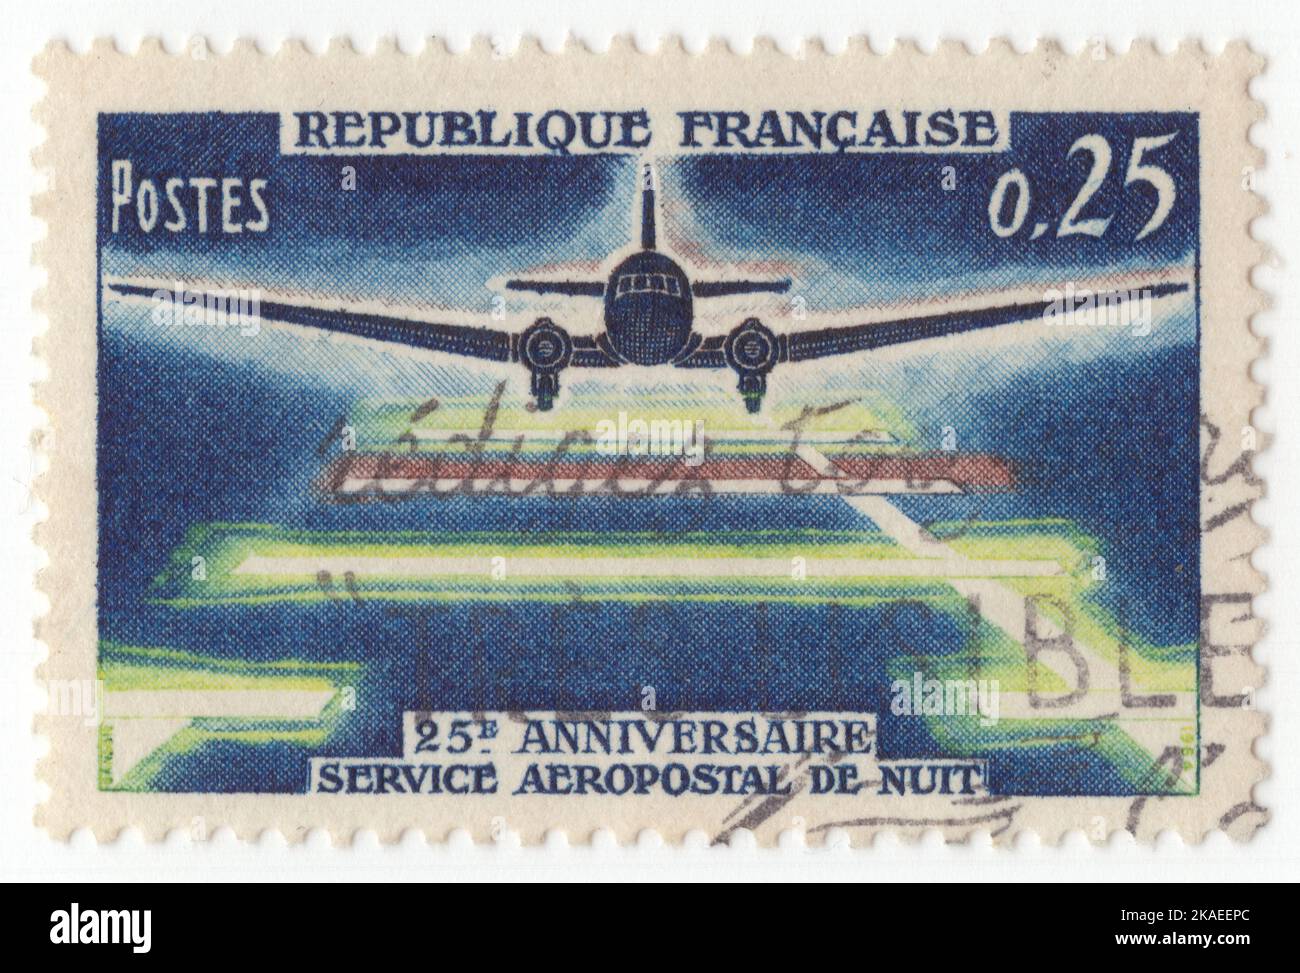 FRANCE - 1964 9 mai : timbre-poste multicolore de 25 centimes représentant l'atterrissage en avion la nuit. 25th anniversaire, service de courrier de nuit Banque D'Images